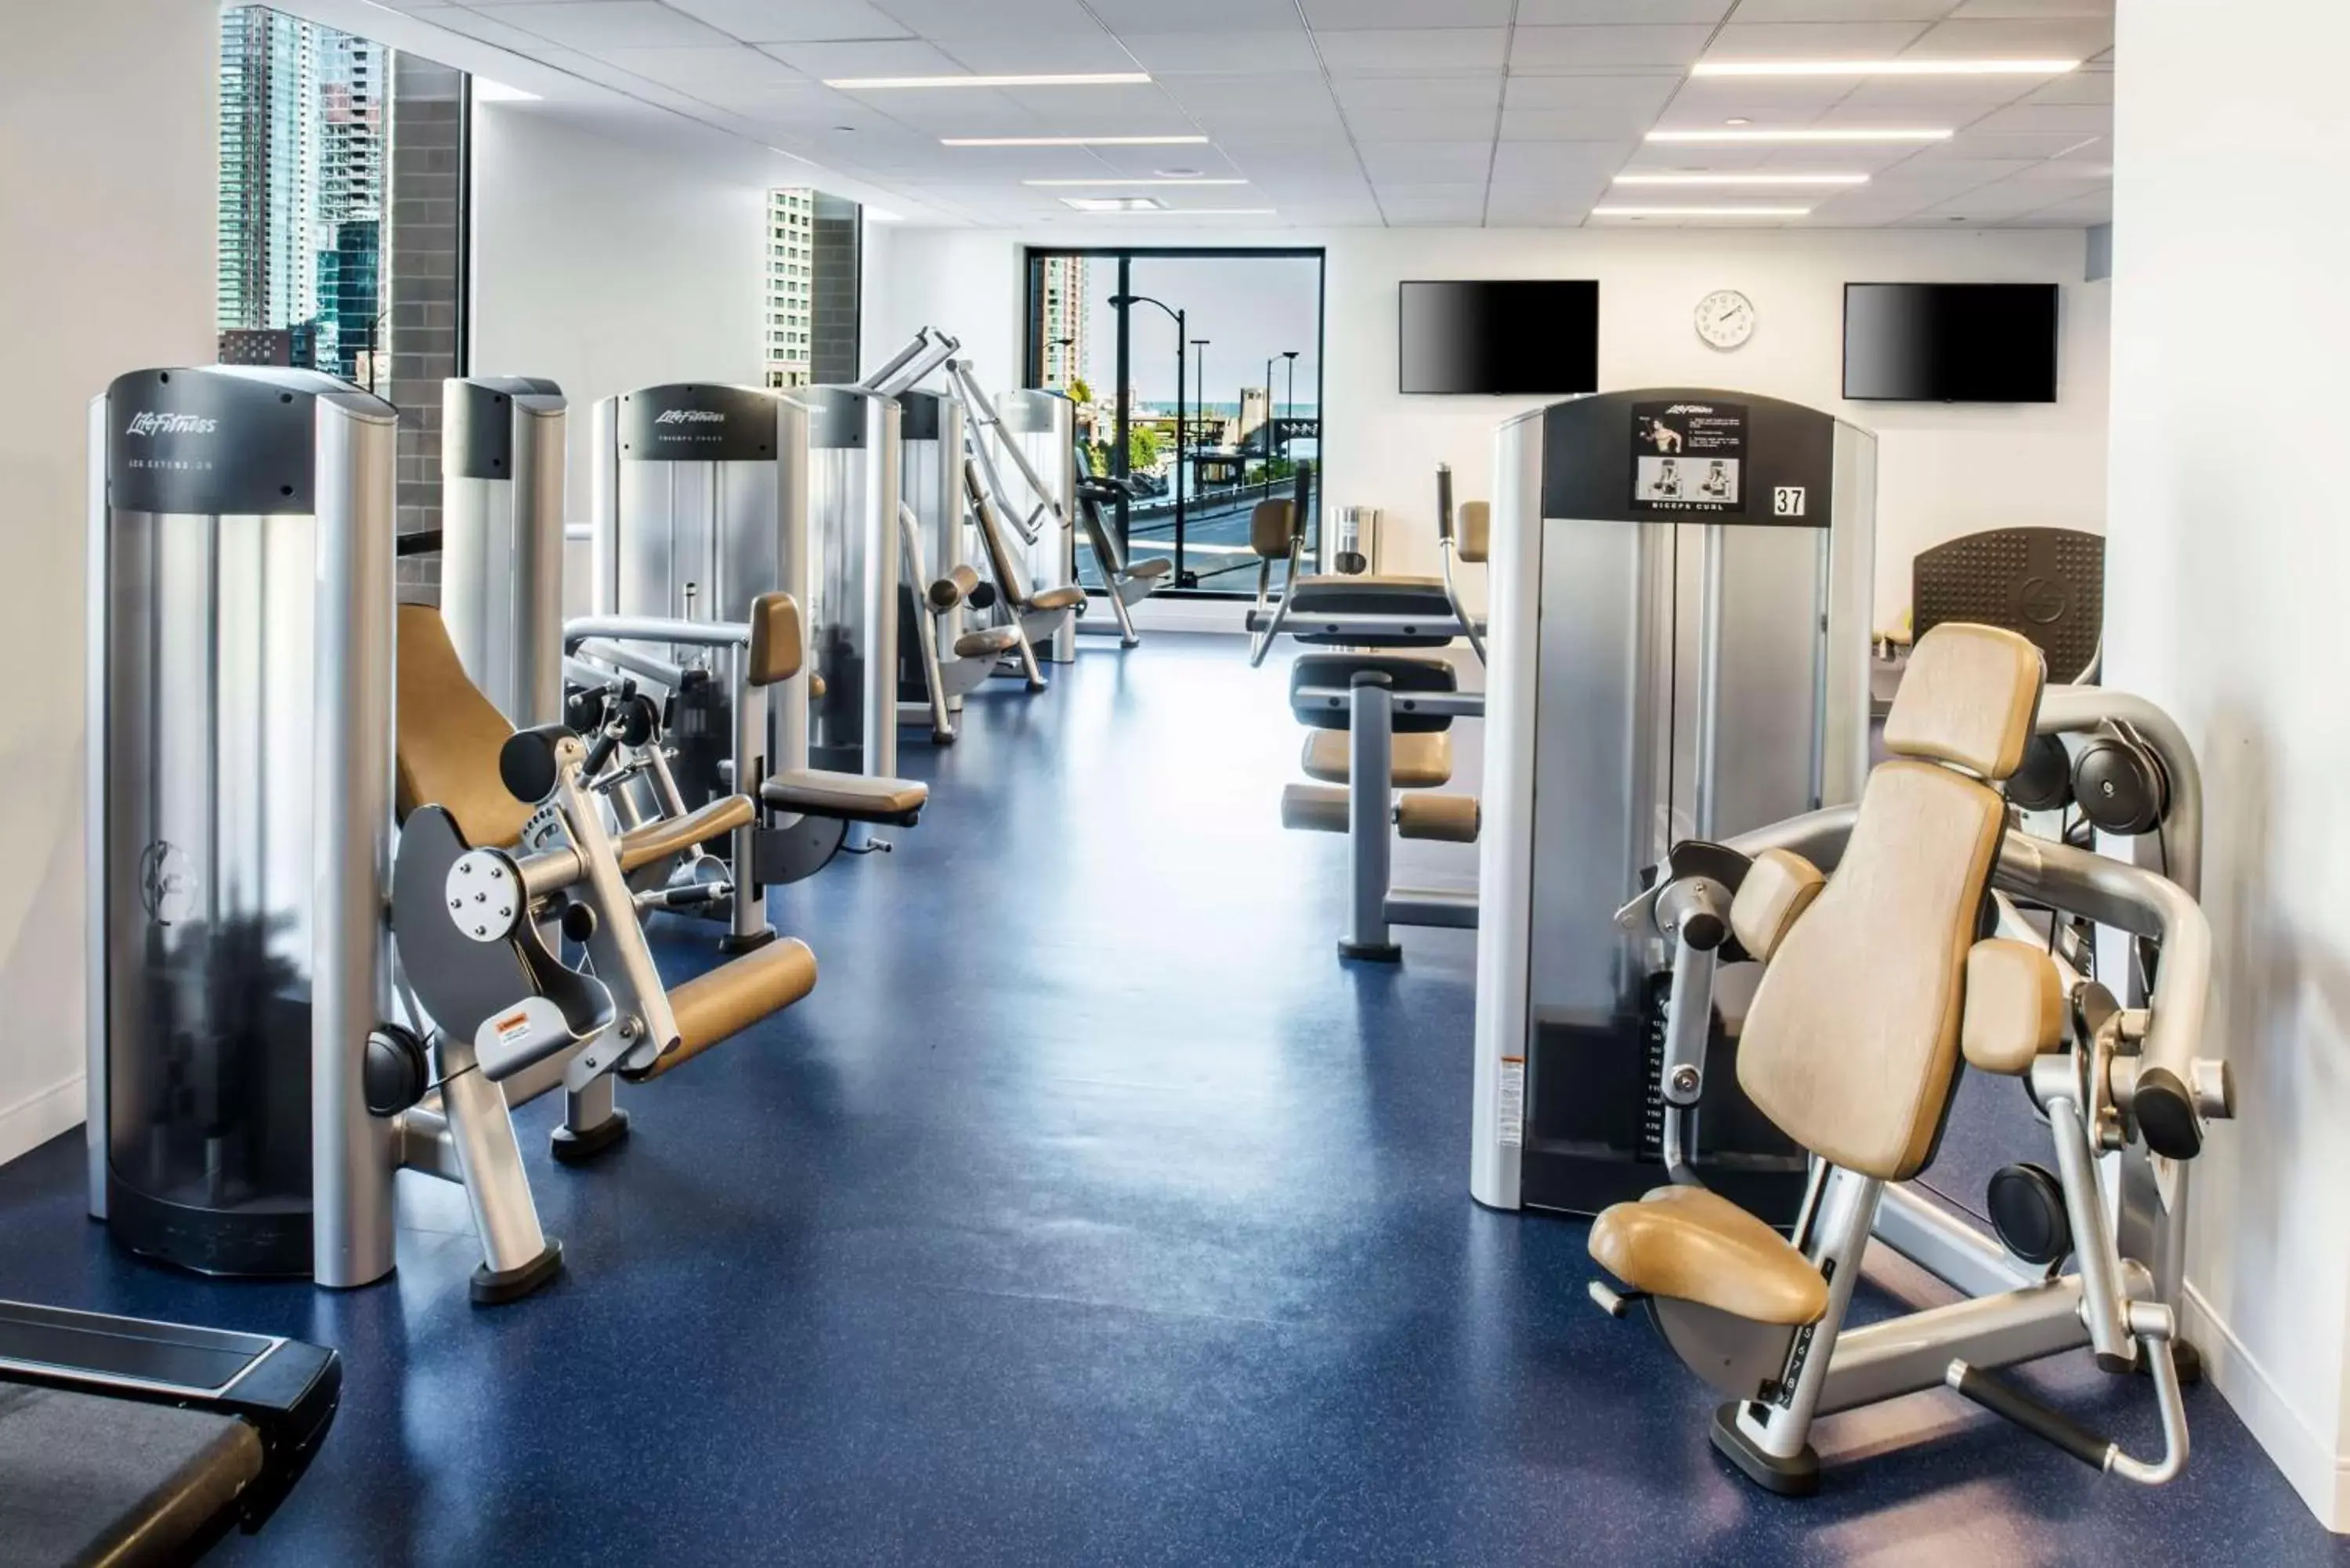 Fitness centre/facilities, Fitness Center/Facilities in Hyatt Regency Chicago